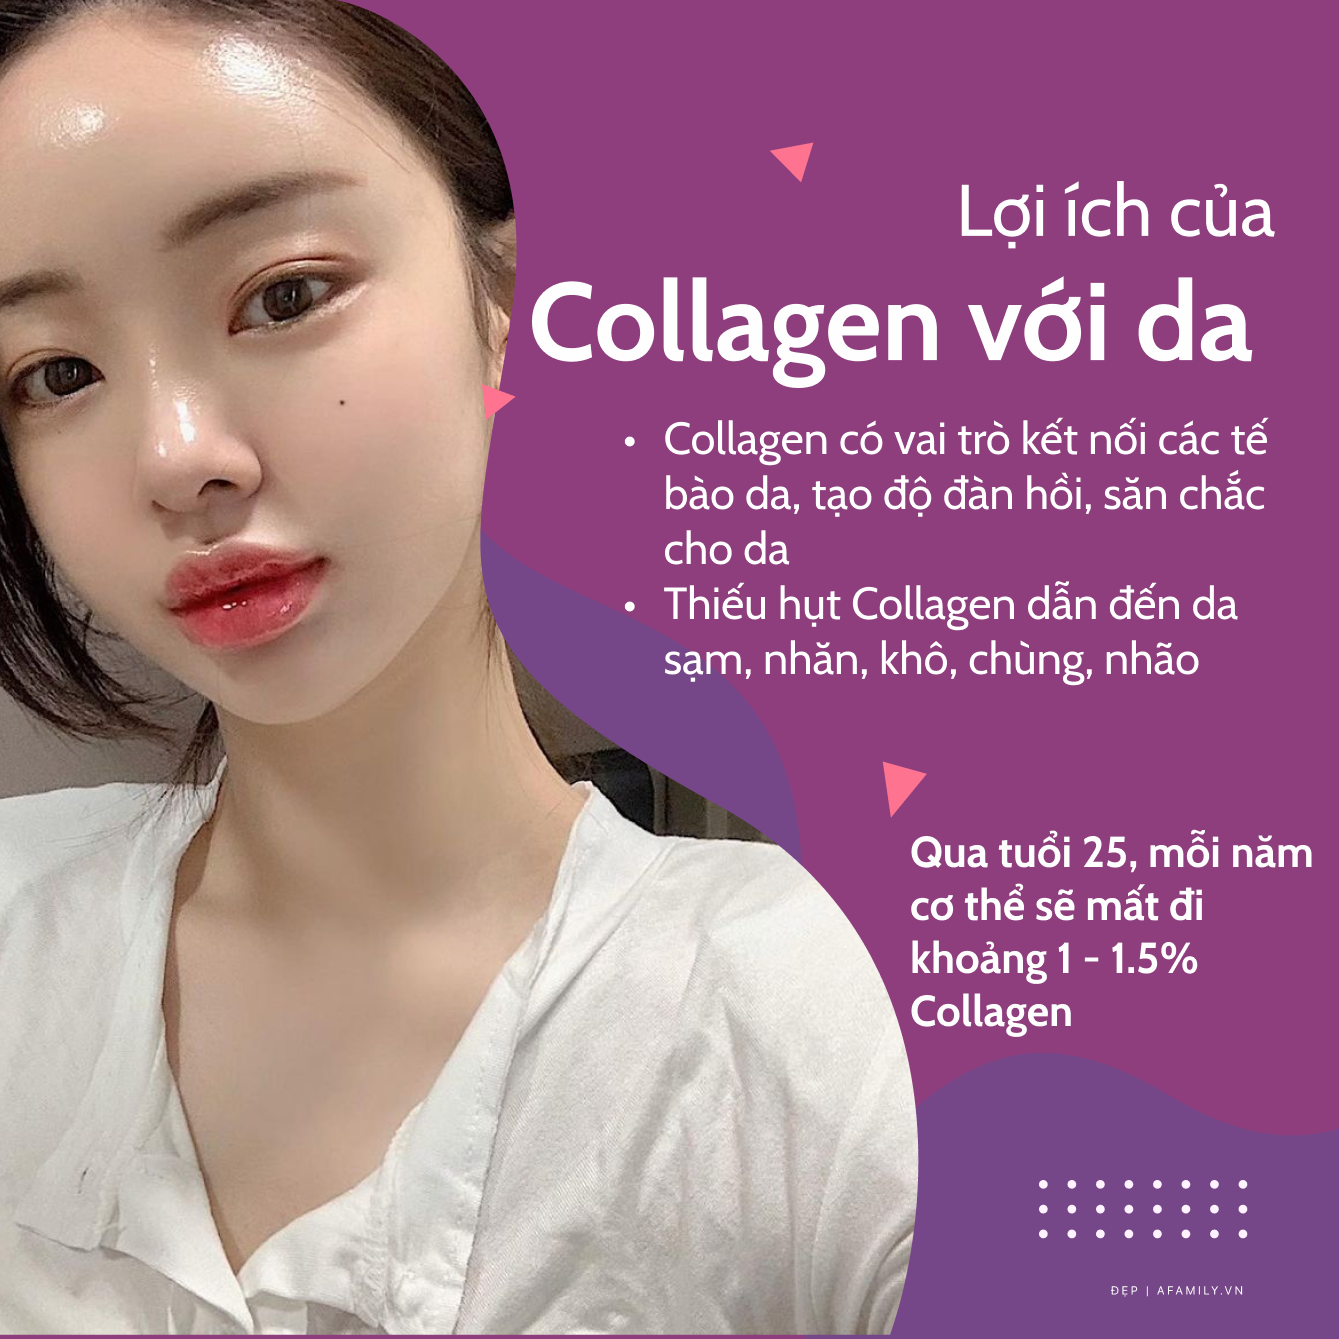 Muốn da khỏe đẹp khi dùng collagen, các chị em phải nhớ kỹ những tip sau - Ảnh 1.